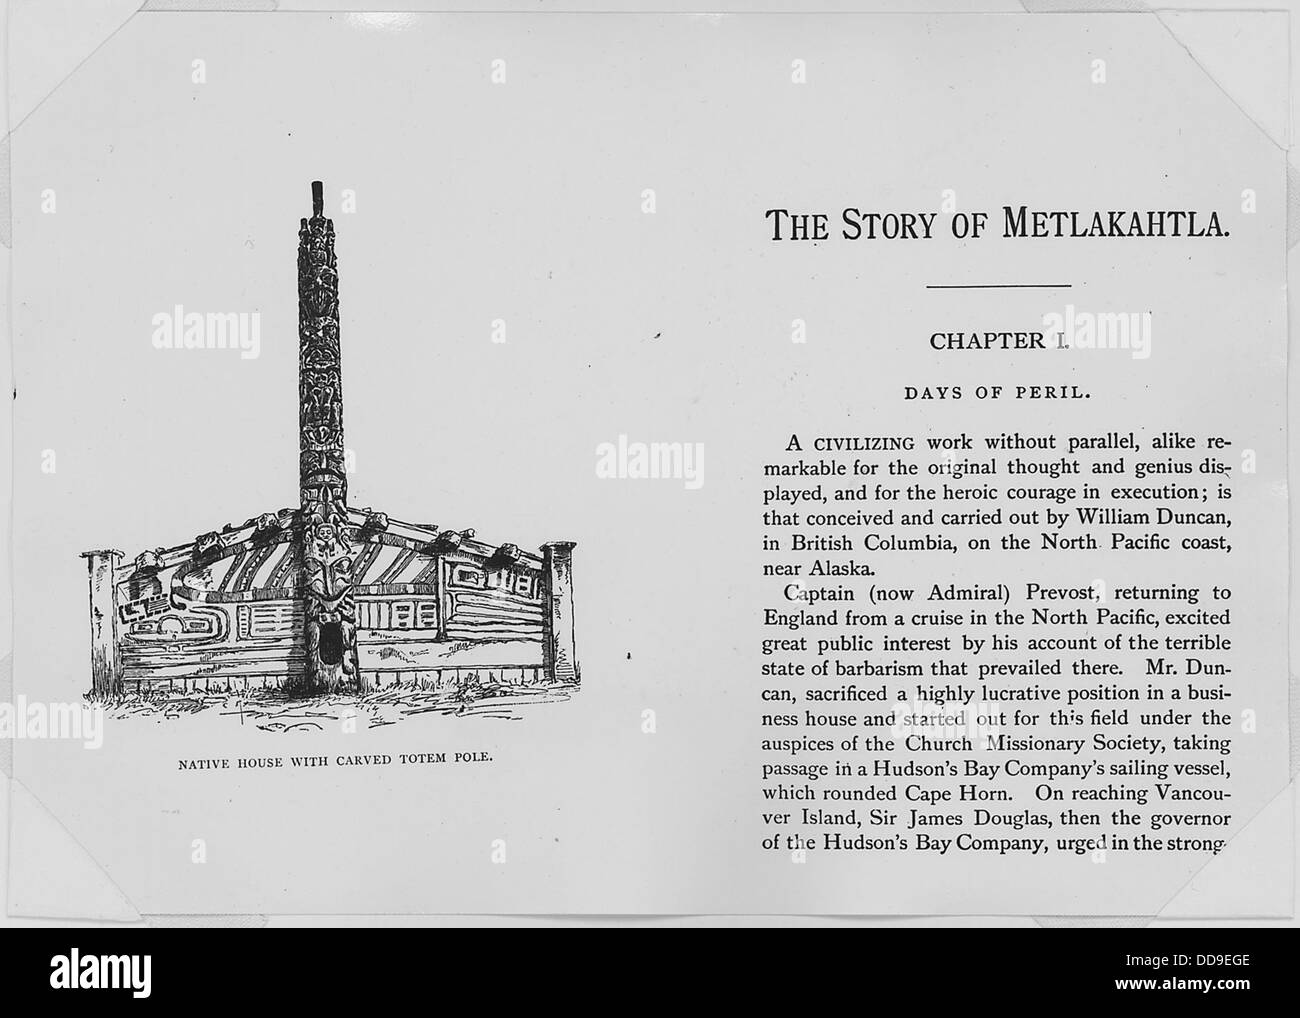 Henry S. Wellcome, la storia di Metlakahtla, 4th. edn., Londra e New York, 1887. Frontespizio e prima pagina. - - 298062 Foto Stock